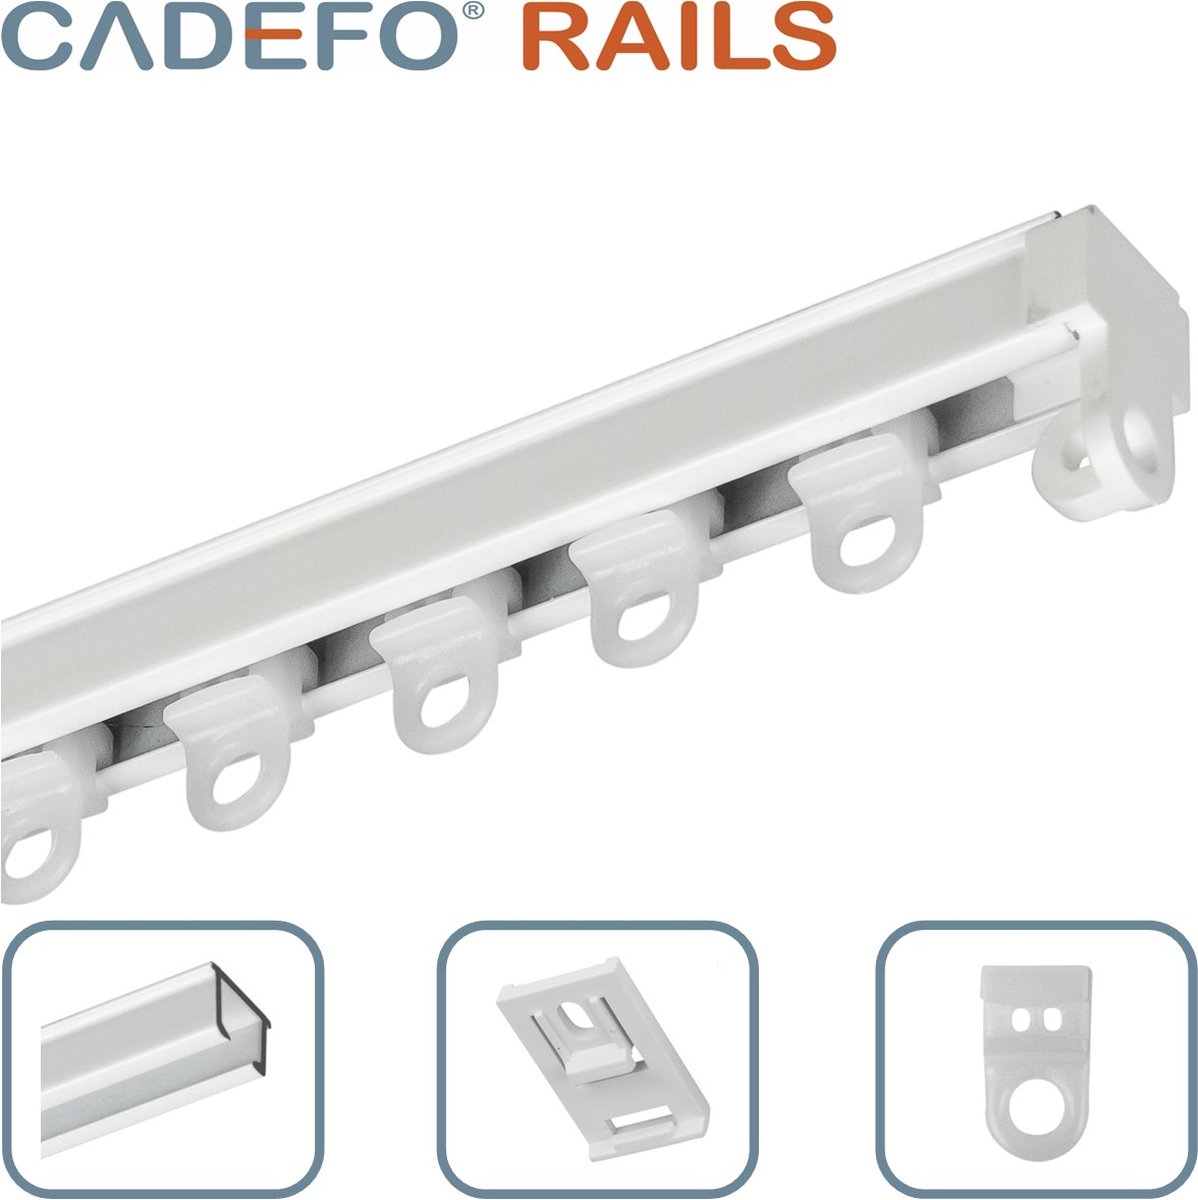 CADEFO RAILS (251 - 300 cm) Gordijnrails - Compleet op maat! - UIT 1 STUK - Leverbaar tot 6 meter - Plafondbevestiging - Lengte 270 cm